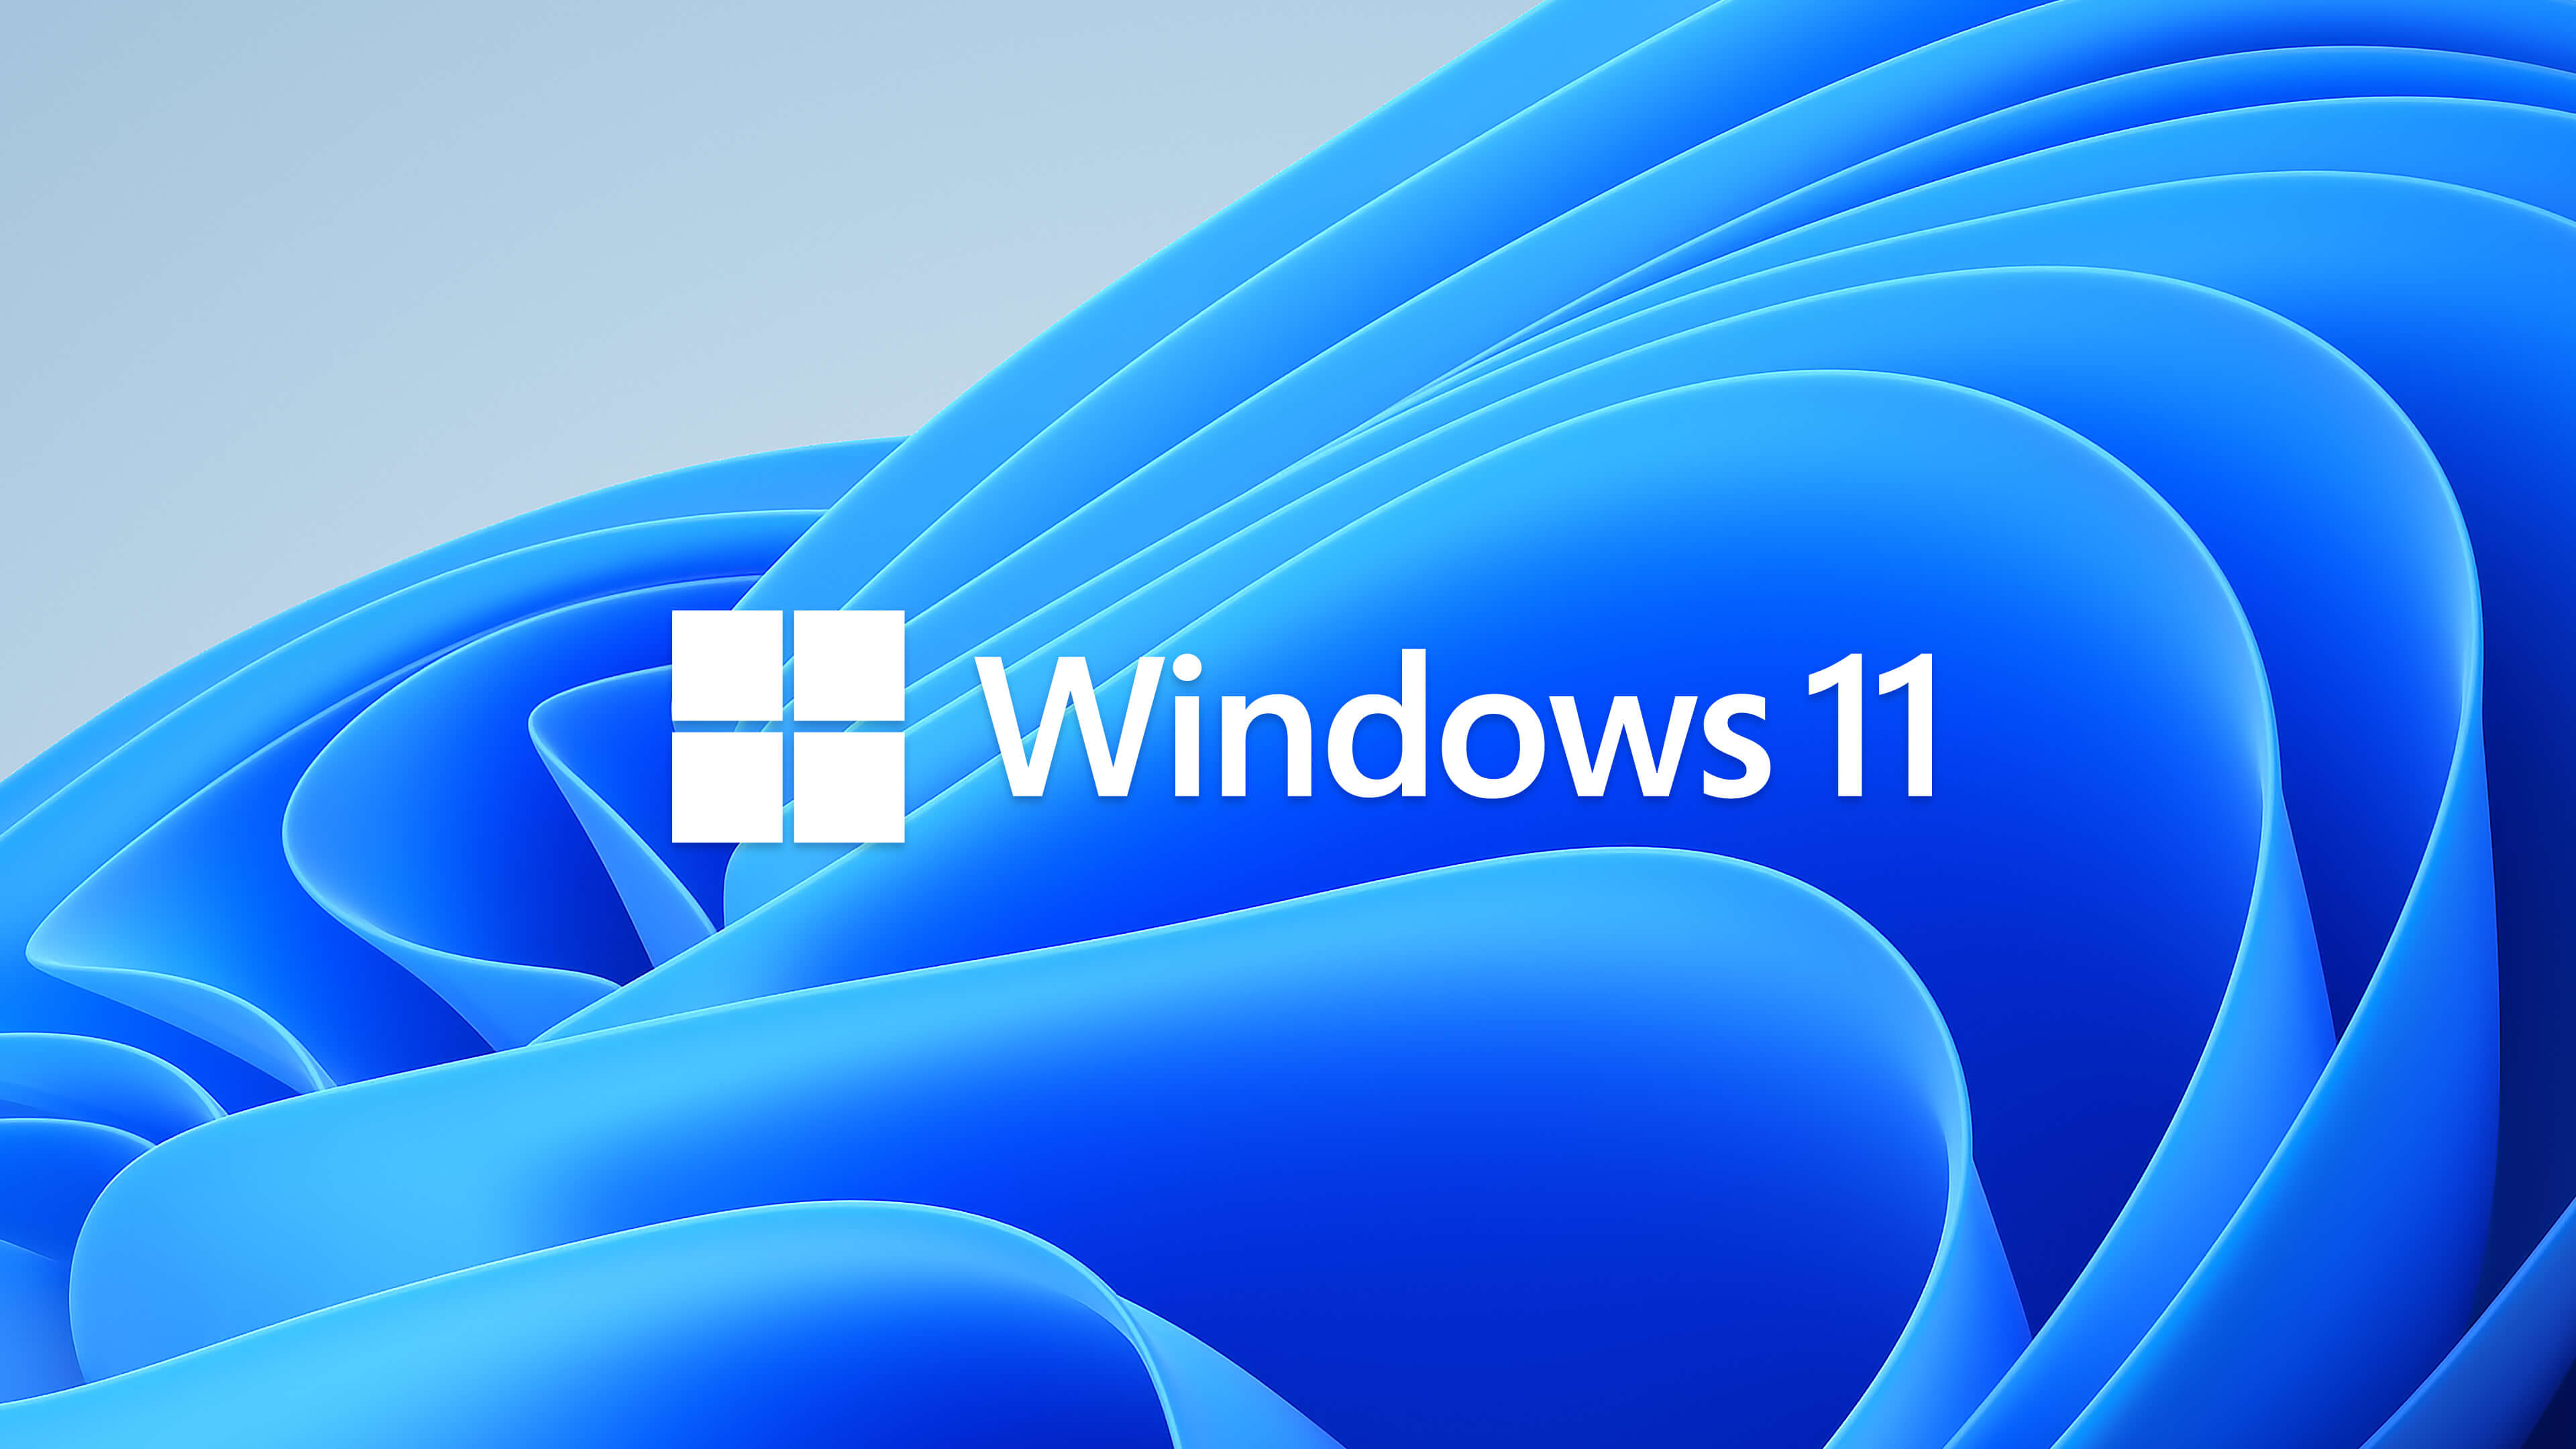 Windows 11 SE Wallpaper 4K, Stock, Colorful, 5K, 8K